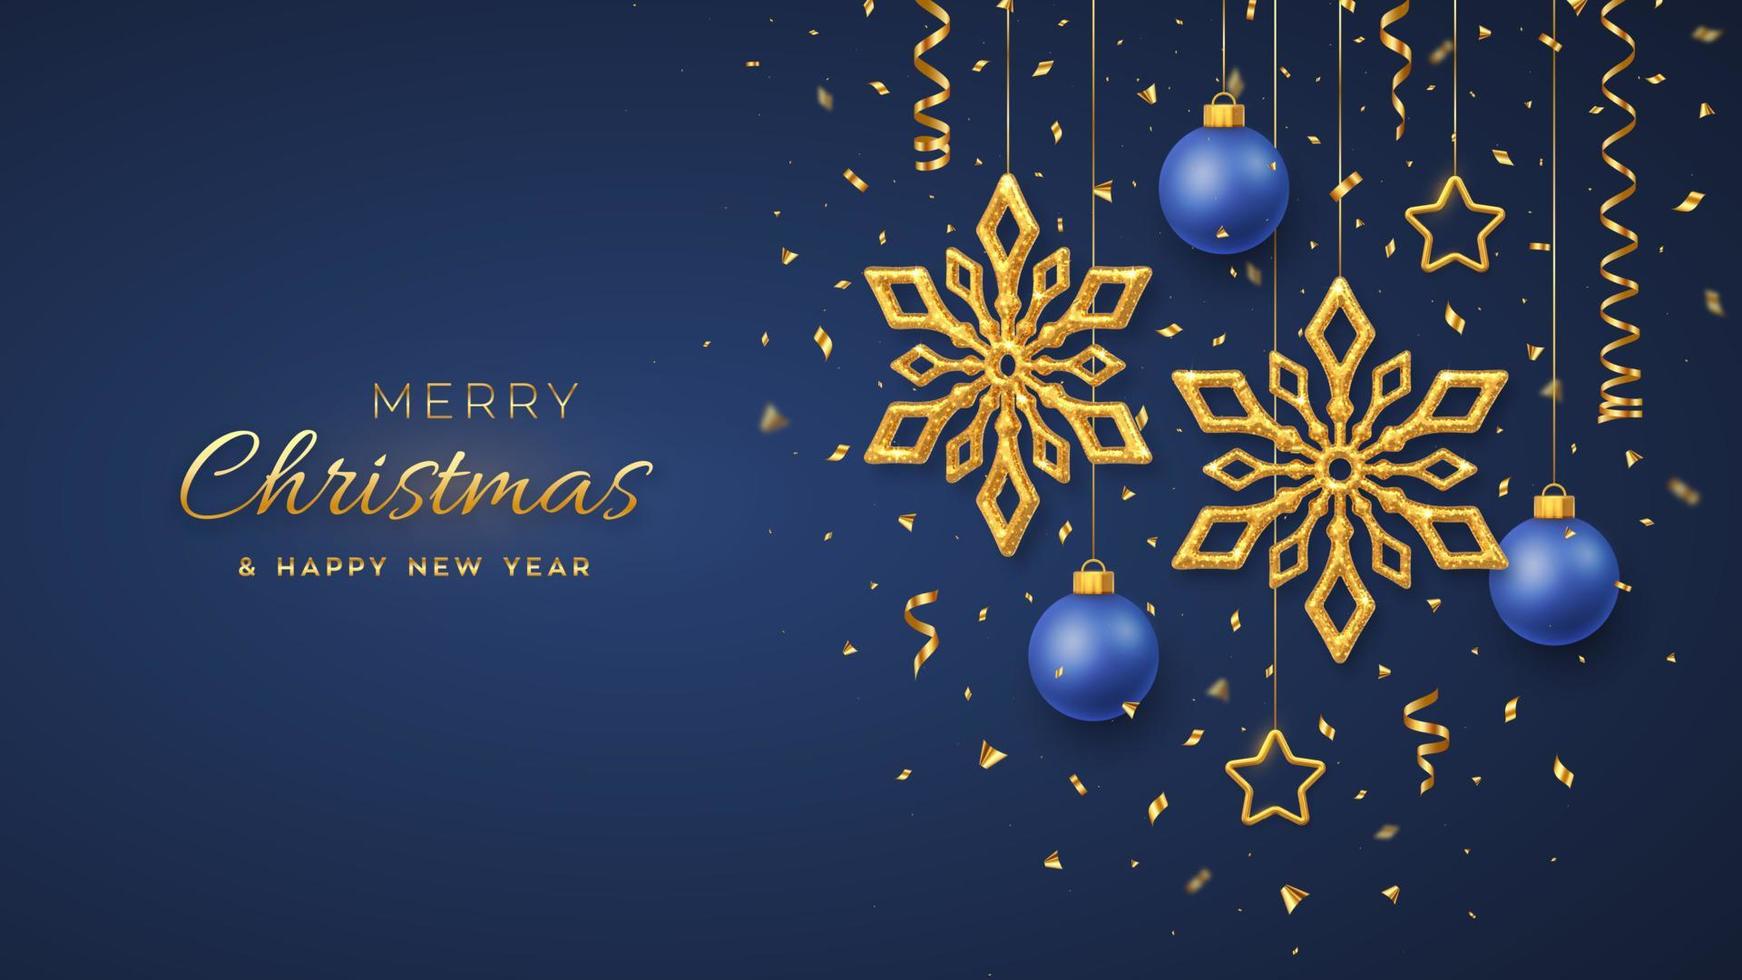 Weihnachtsblauer Hintergrund mit hängenden glänzenden goldenen Schneeflocken, metallischen 3D-Sternen und Kugeln. Frohe Weihnachten Grußkarte. Weihnachts- und Neujahrsplakat, Web-Banner. Vektorillustration. vektor